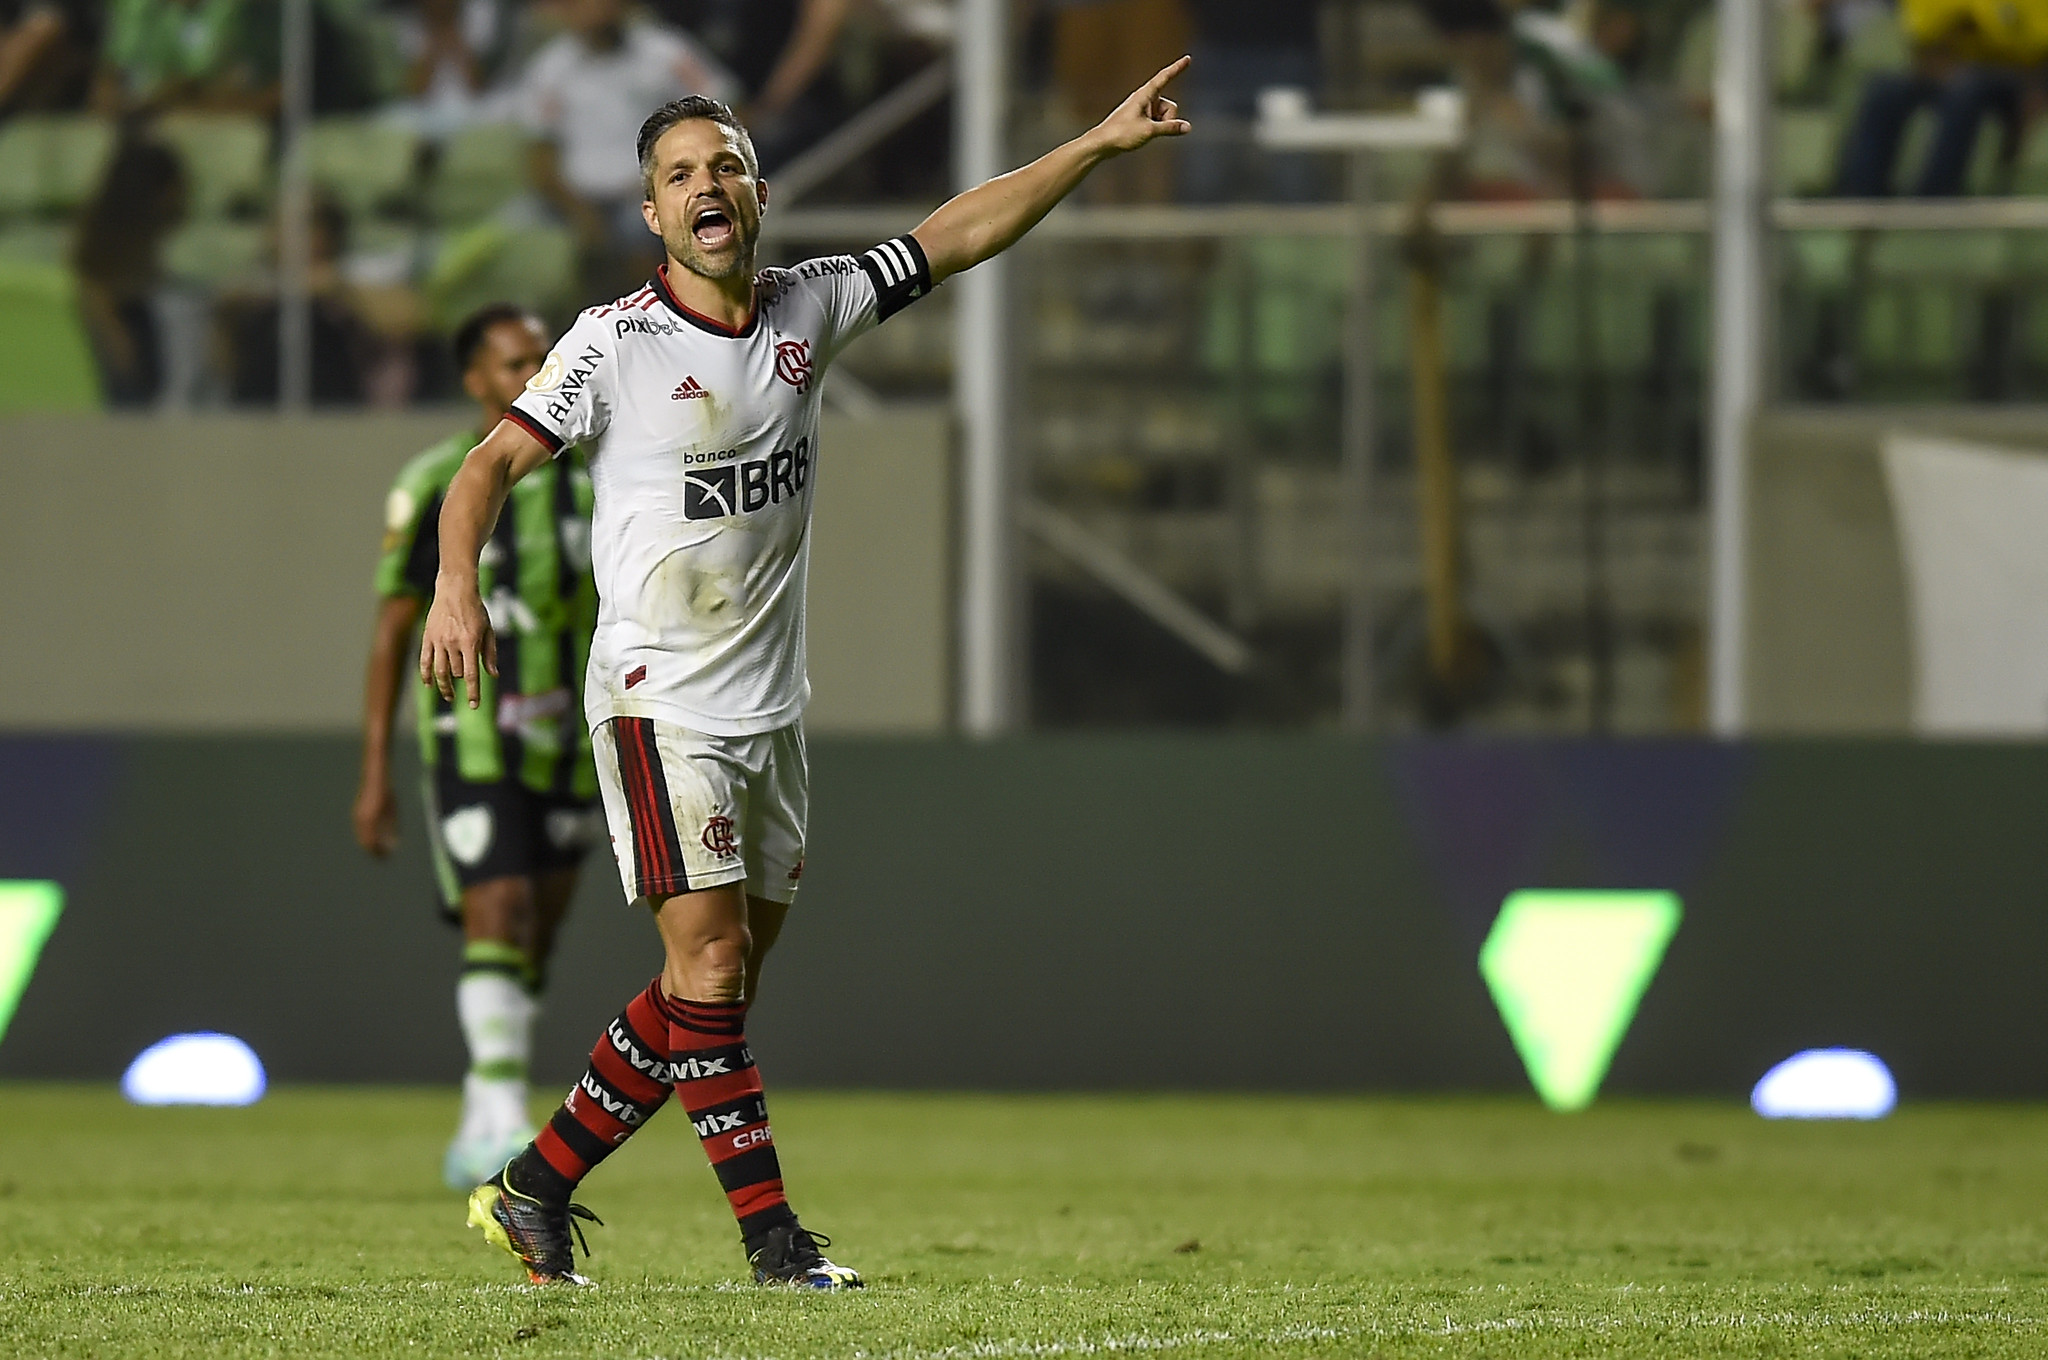 Diego destaca o elenco do Flamengo após vitória dos reservas sobre o América-MG: 'Conseguimos provar a força desse grupo'